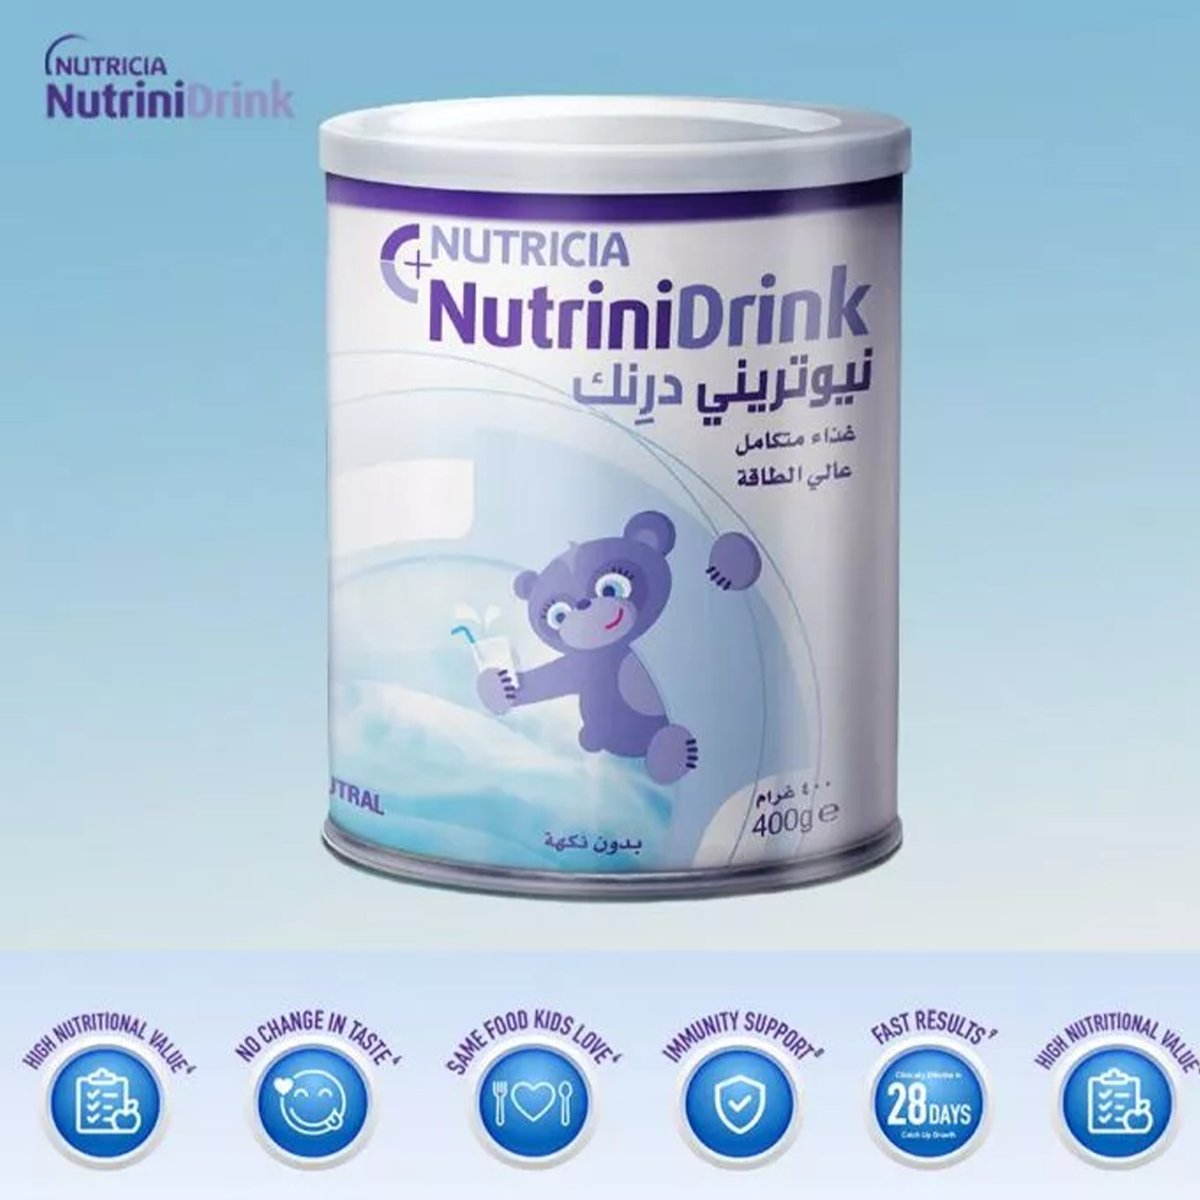 Aptamil Nutricia Nutrini Drink Neutral 400 g